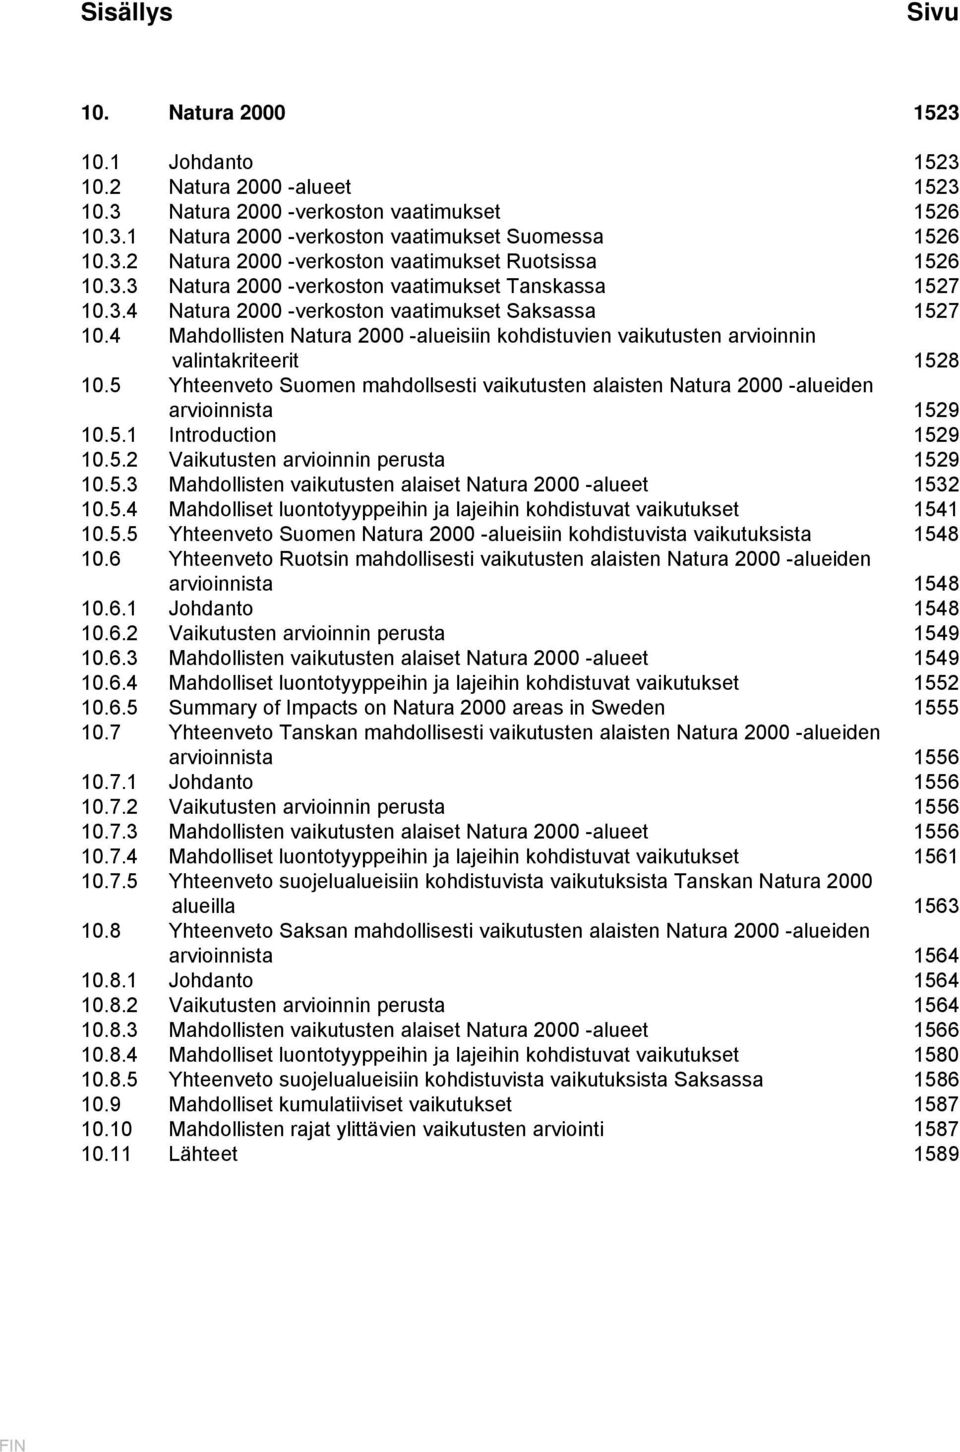 4 Mahdollisten Natura 2000 -alueisiin kohdistuvien vaikutusten arvioinnin valintakriteerit 1528 10.5 Yhteenveto Suomen mahdollsesti vaikutusten alaisten Natura 2000 -alueiden arvioinnista 1529 10.5.1 Introduction 1529 10.